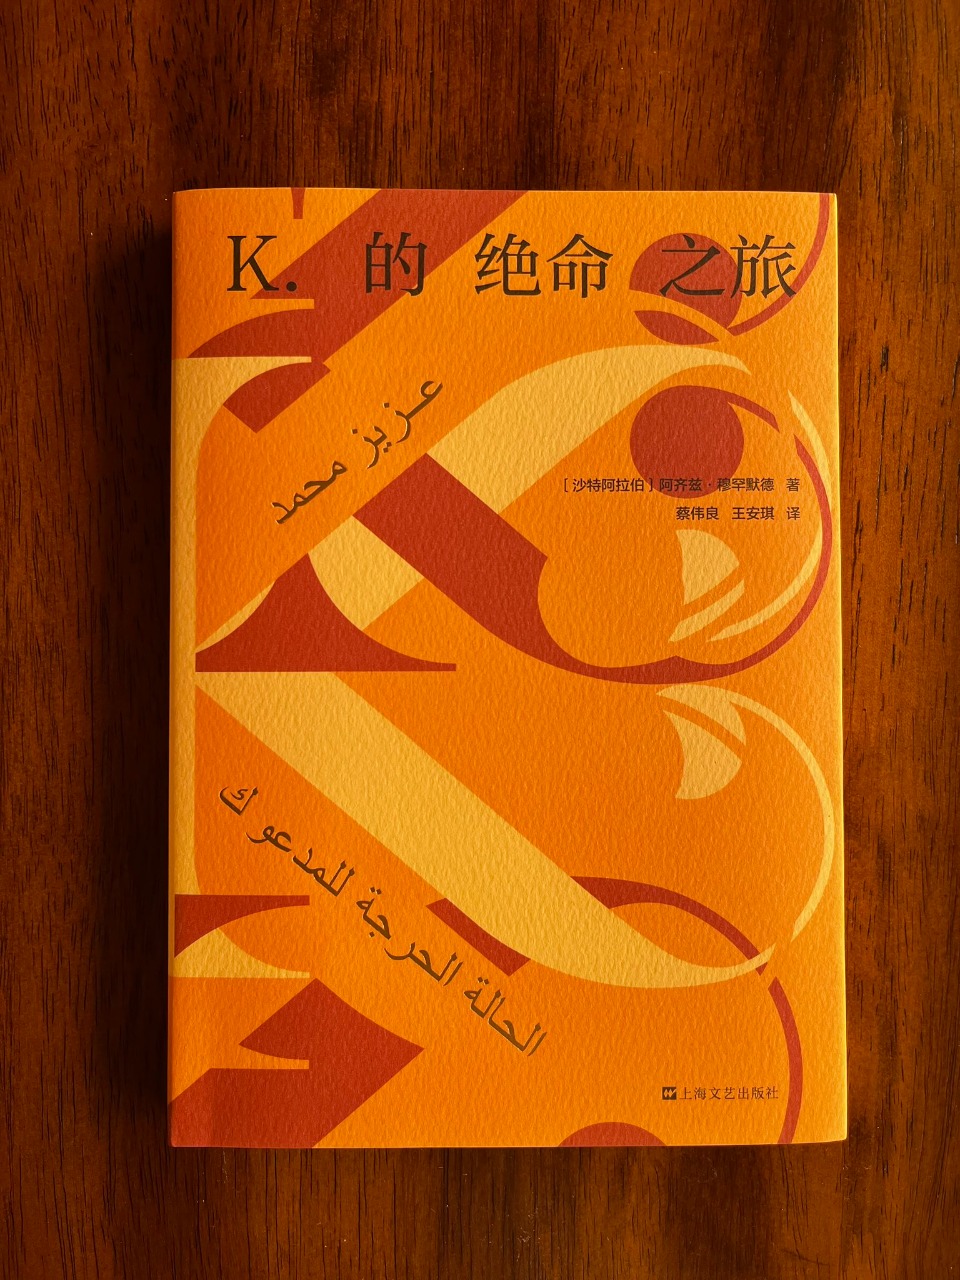 غلاف الترجمة الصينية لرواية الحالة الحرجة للمدعو ك